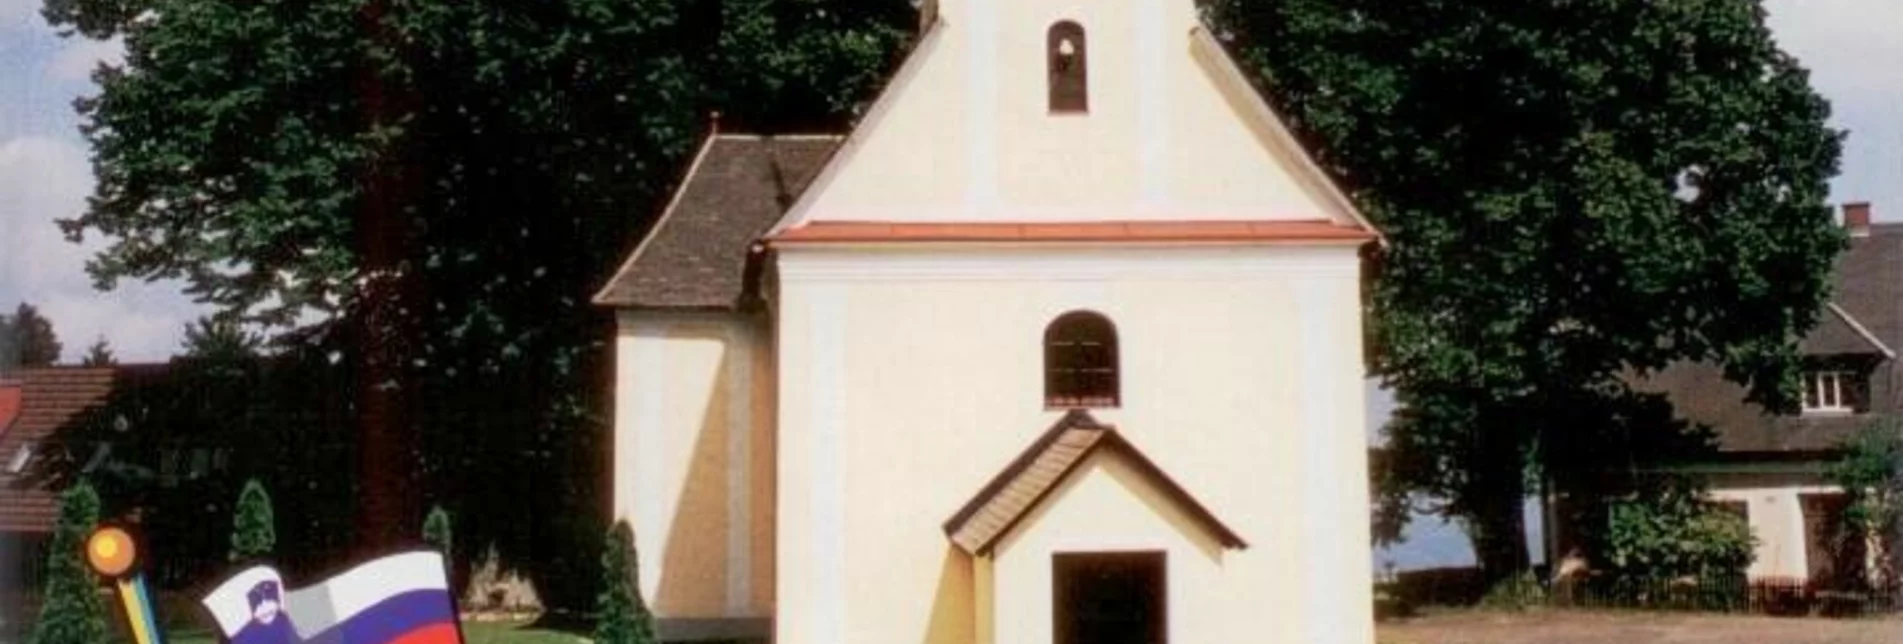 Wanderung Zwischen Kirchen und Linden - Touren-Impression #1 | © Südsteiermark